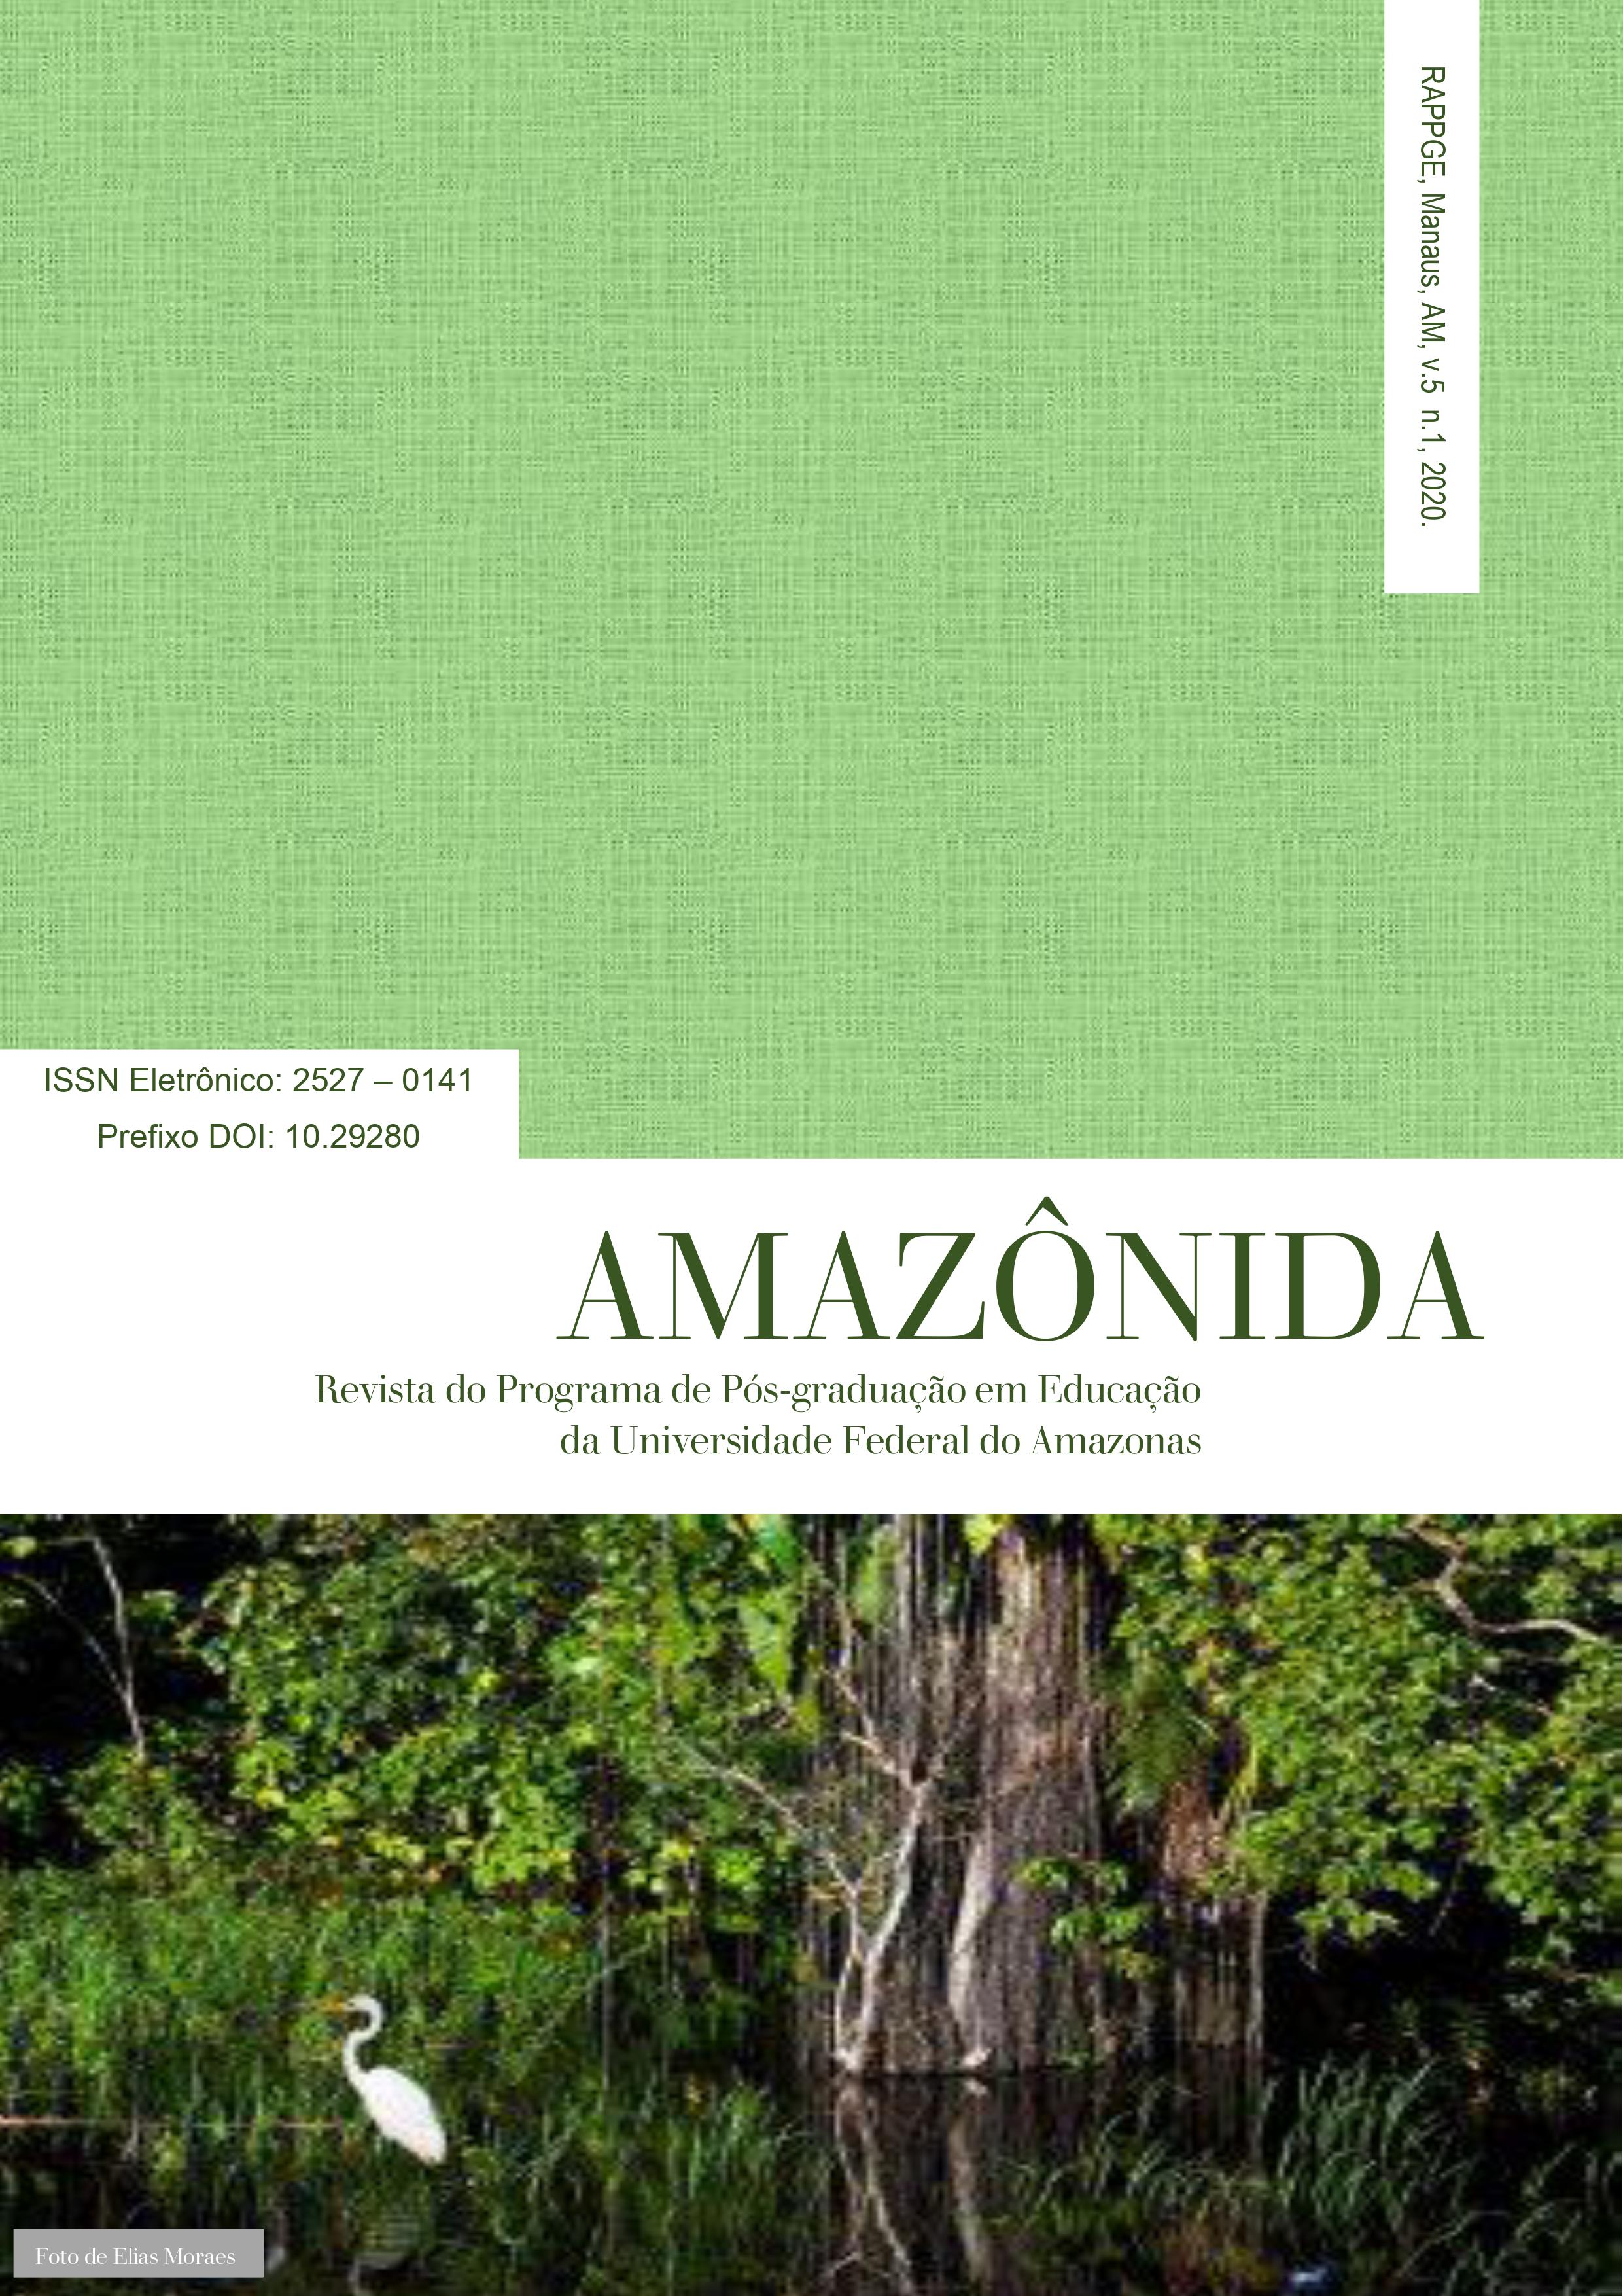 					Visualizar v. 5 n. 1 (2020): Revista Amazônida: Revista do Programa de Pós-Graduação em Educação da Universidade Federal do Amazonas 
				